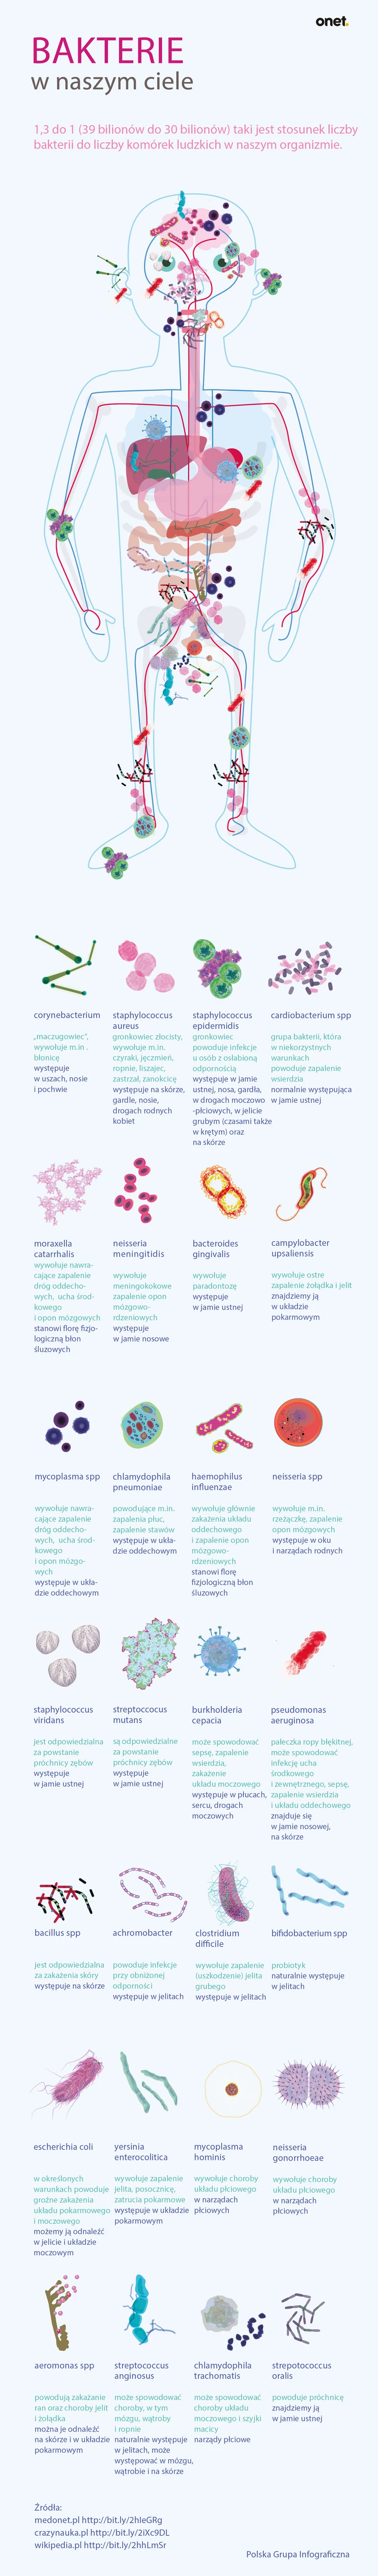 Bakterie w ciele człowieka